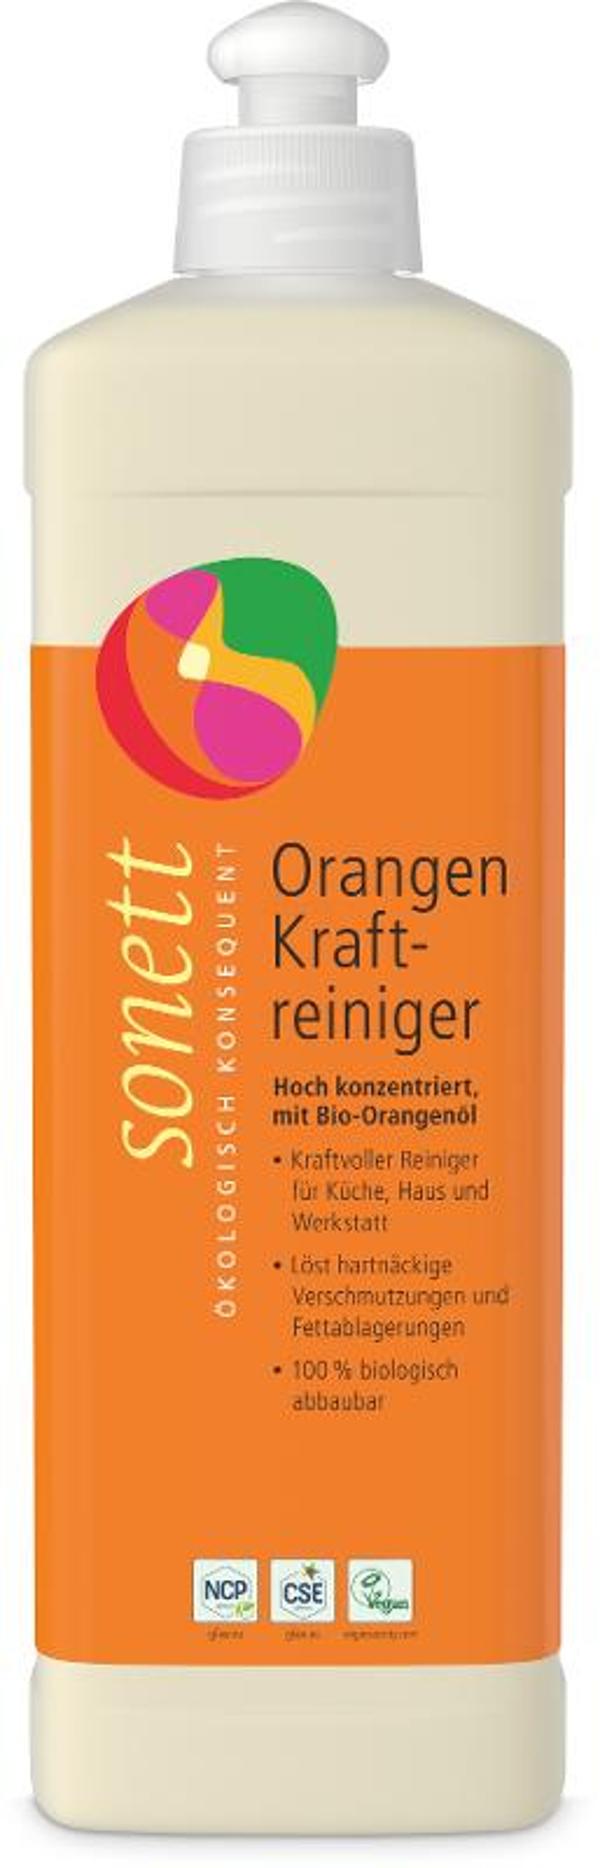 Produktfoto zu Orangen Kraft-Reiniger